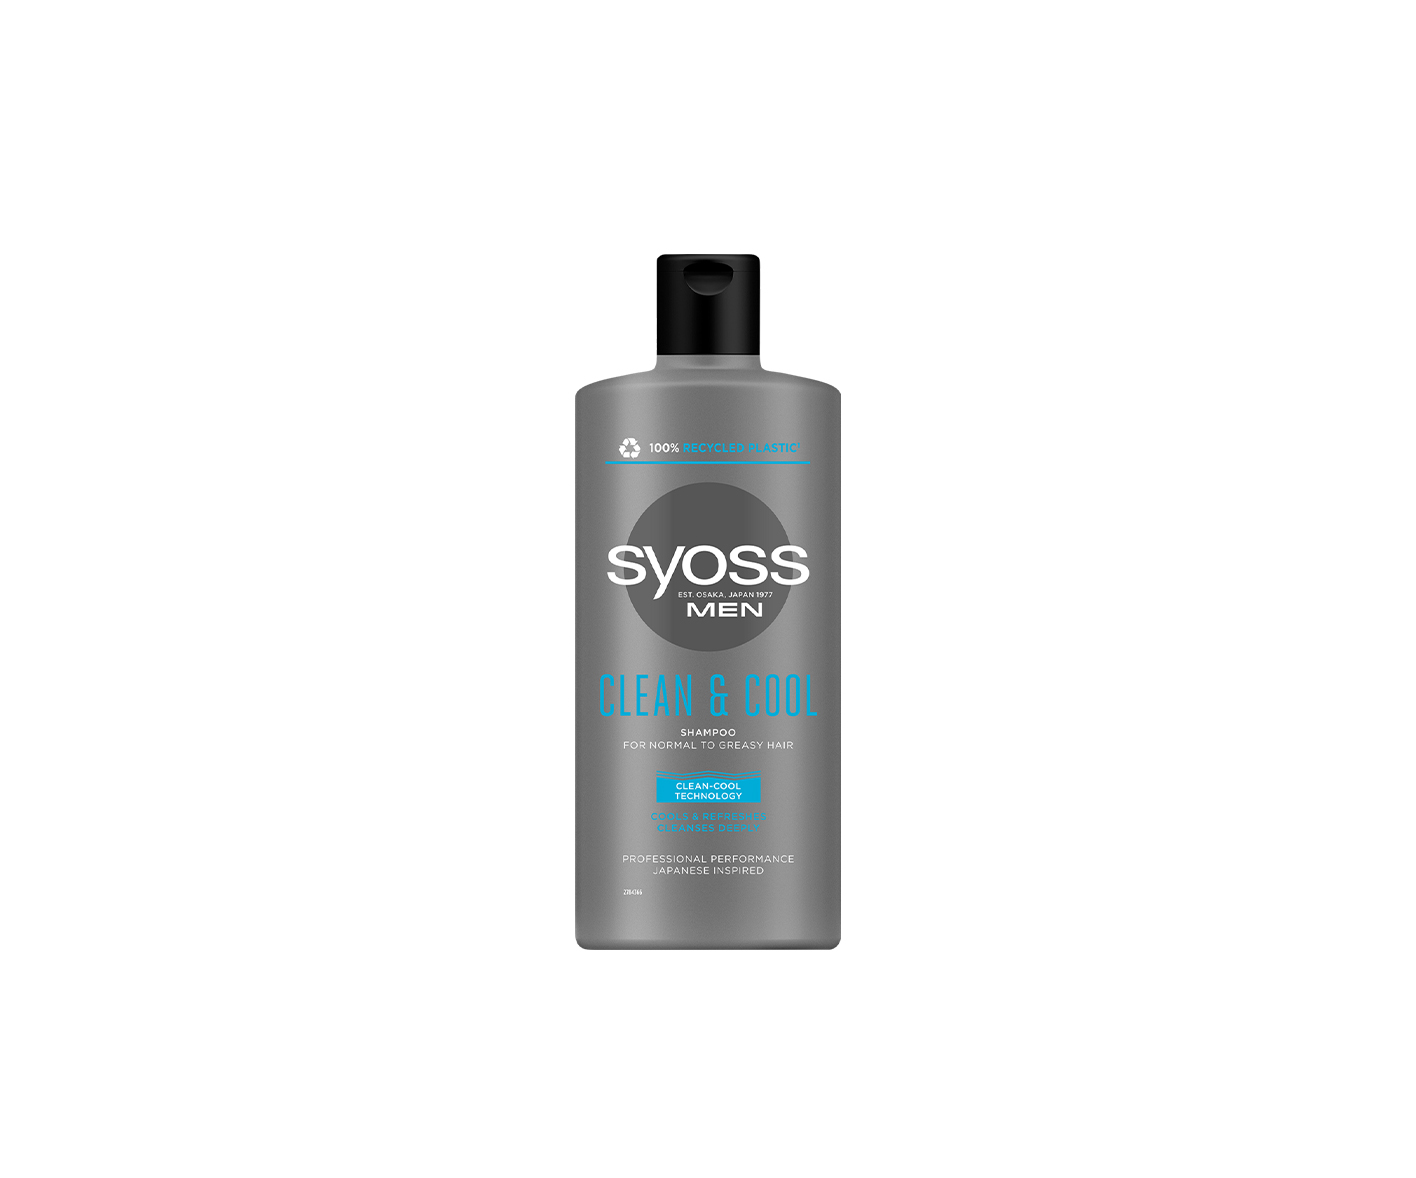 SYOSS MEN Clean & Cool, șampon pentru bărbați